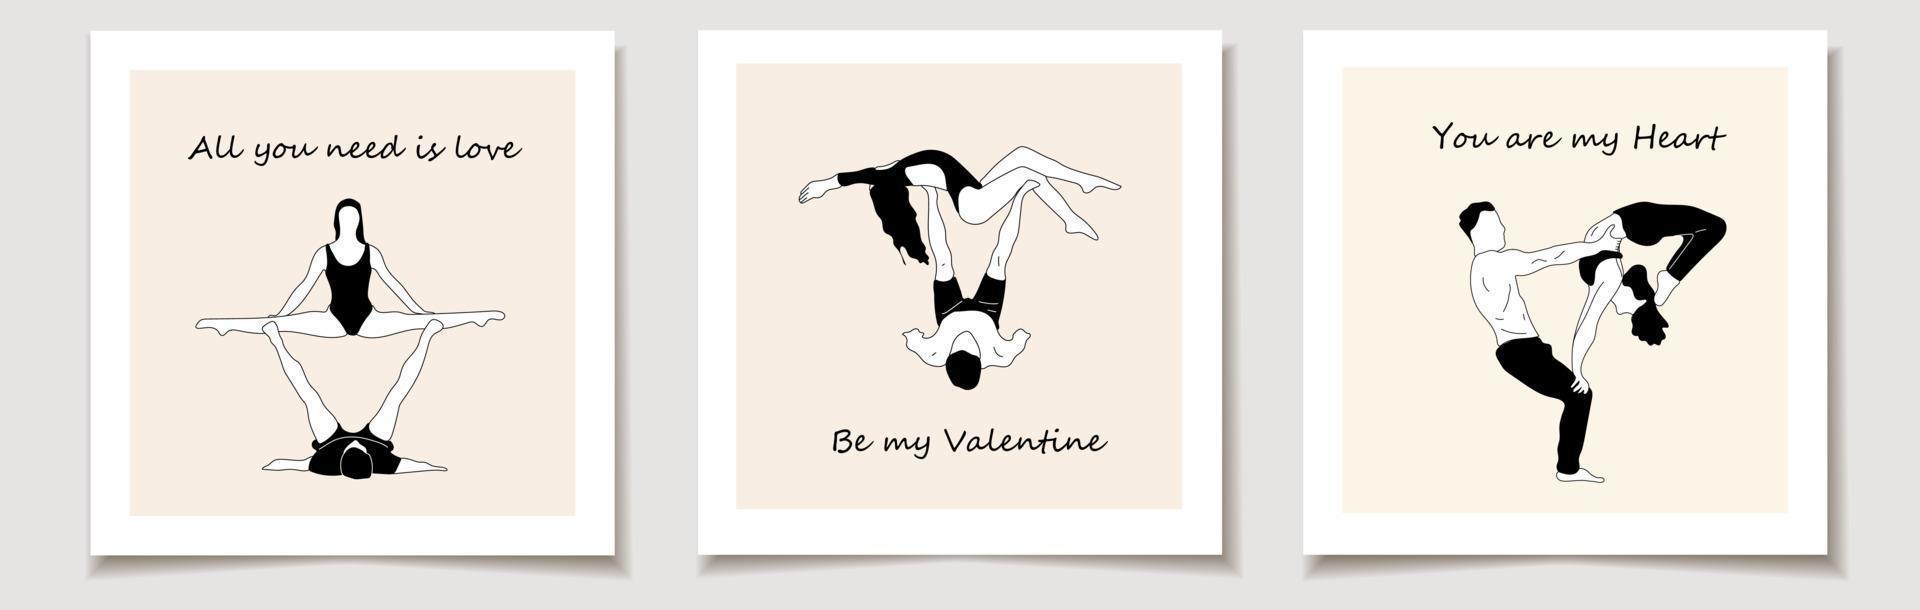 impostato di San Valentino giorno carta con yoga asana per coppia mano.yoga disegnato schizzo vettore